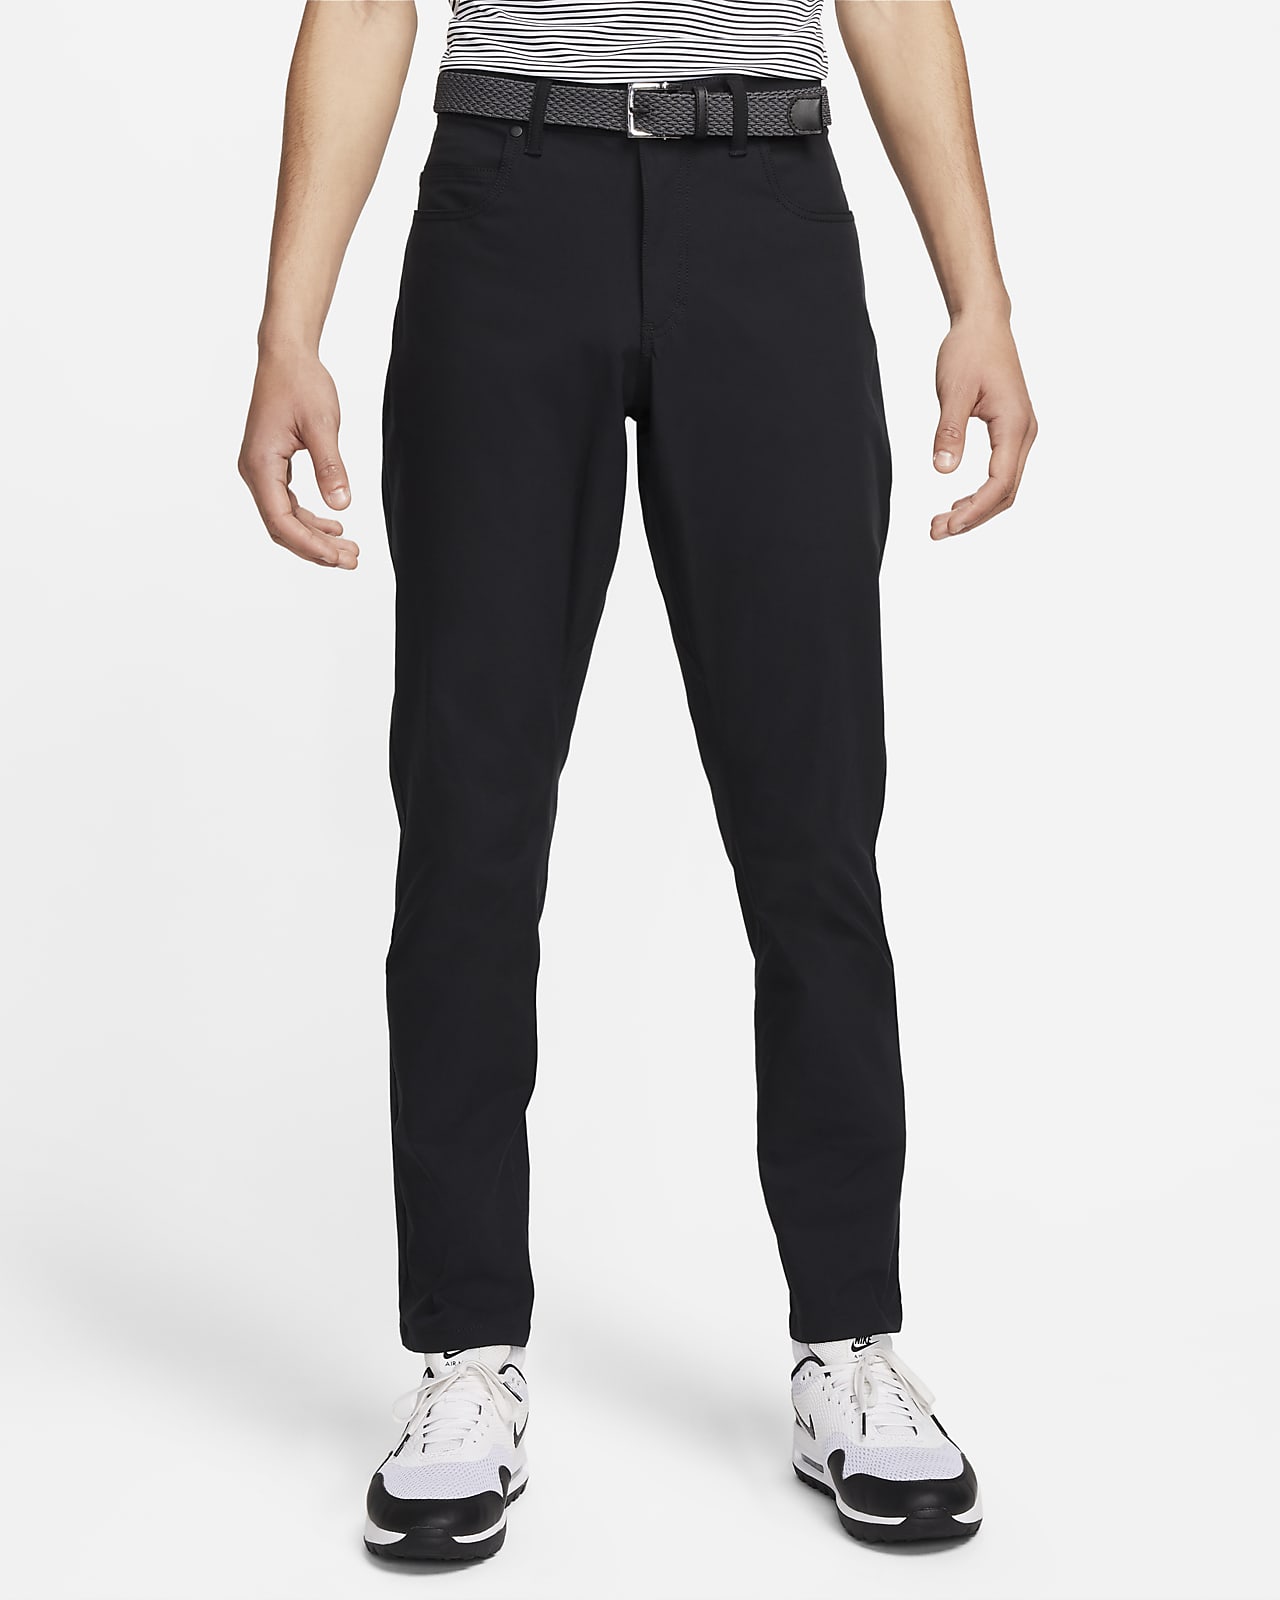 Nike Tour Pantalón de golf de ajuste entallado con 5 bolsillos - Hombre